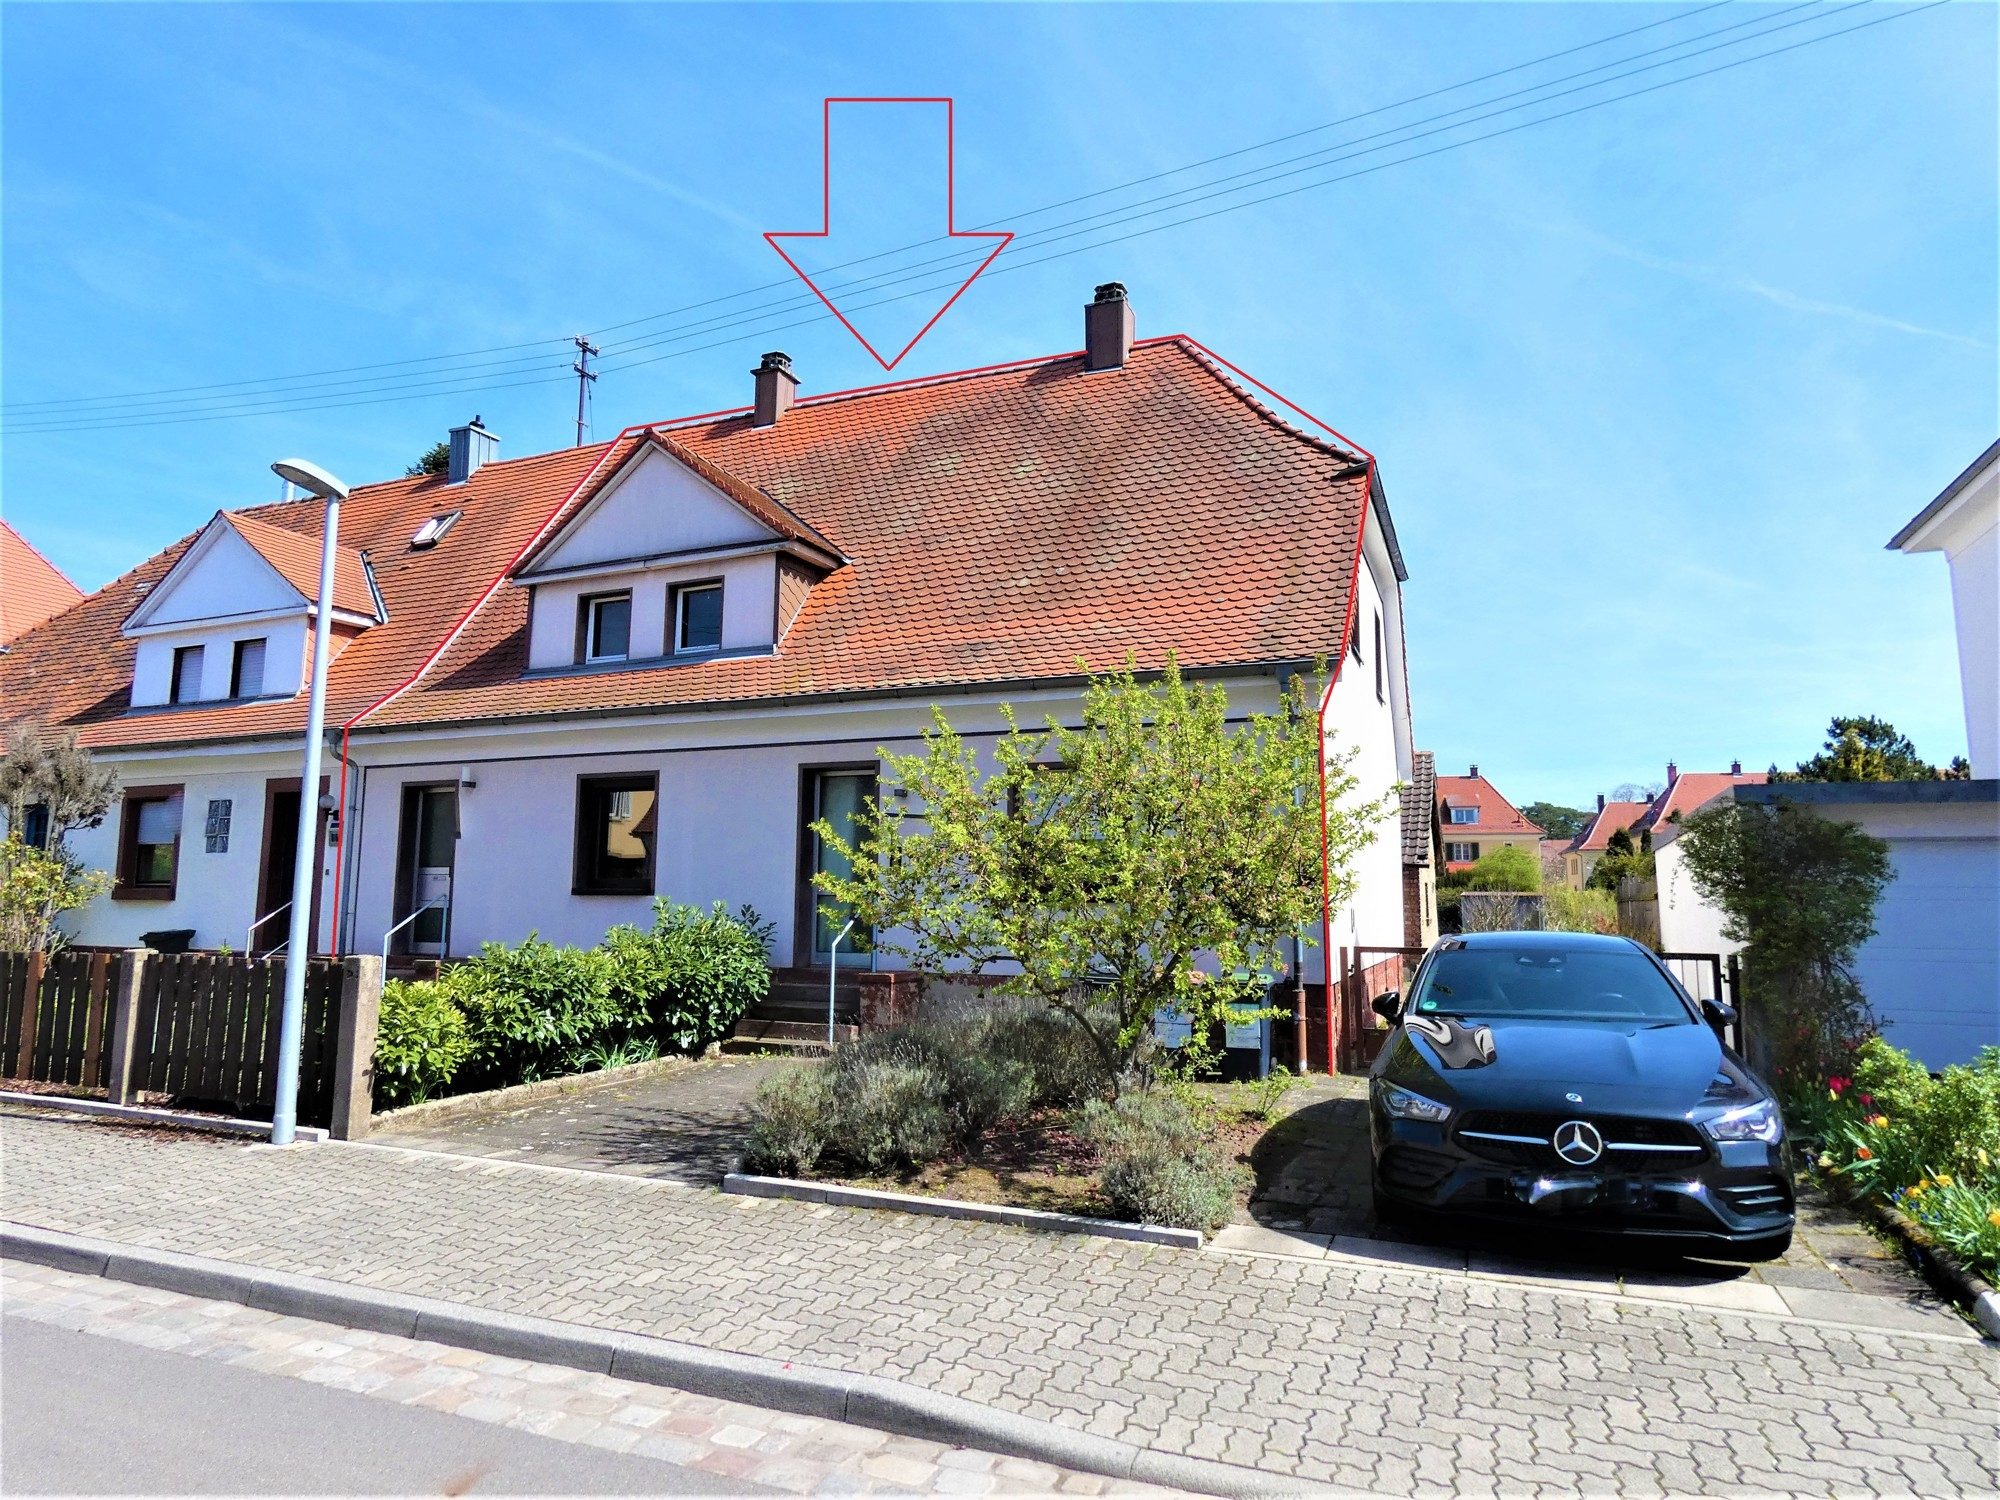 HUST Immobilien GmbH & Co. KG - Immobilienangebot - Karlsruhe - Alle - In Ihrer Nachbarschaft wurde dieses 1-2 Familienwohnhaus mit großem Grundstück gerade erst verkauft!